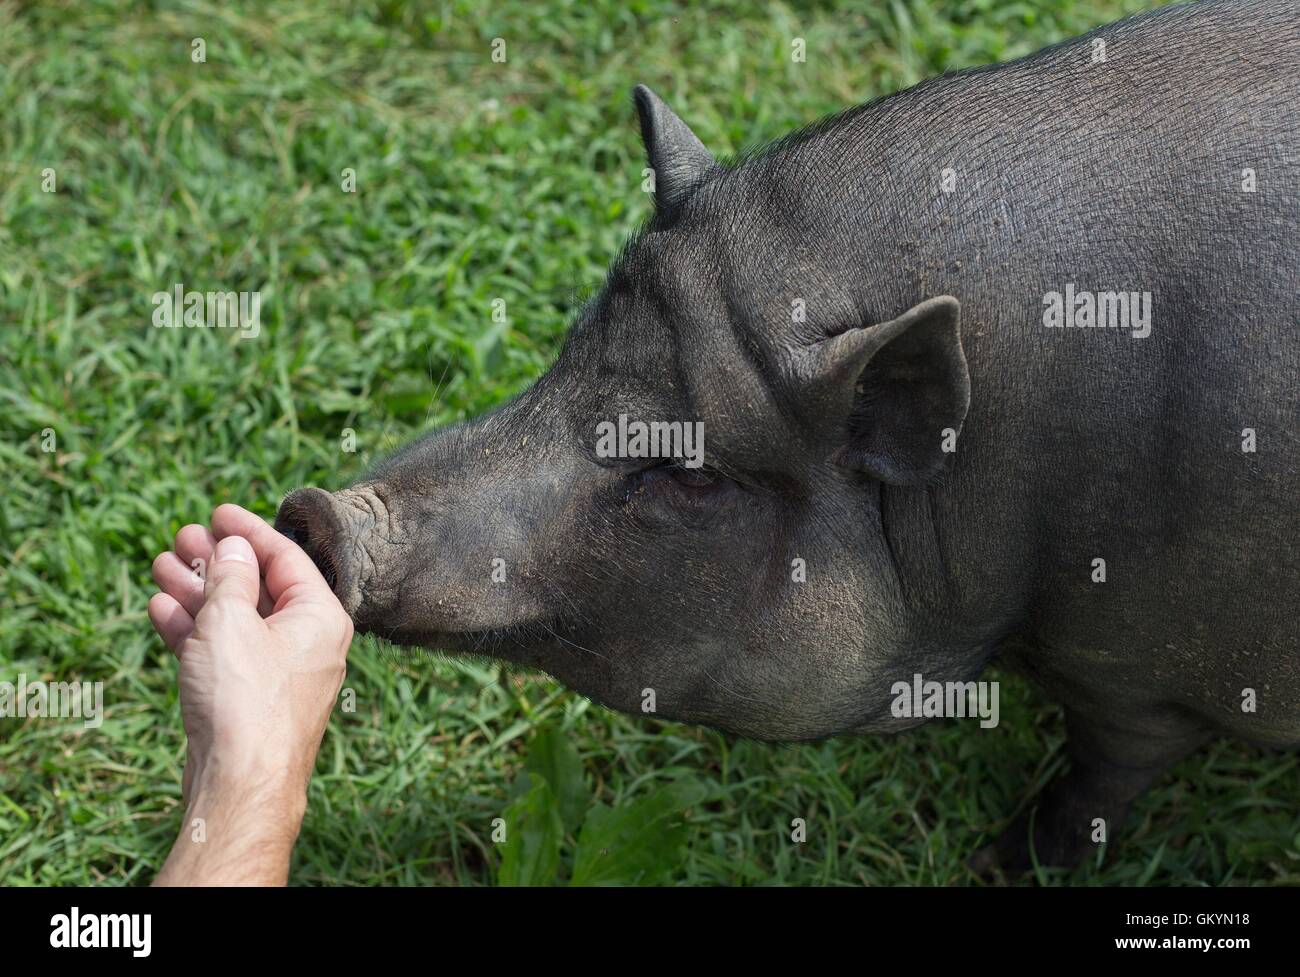 La main d'un homme caressant un cochon dans une ferme sanctuaire. Banque D'Images